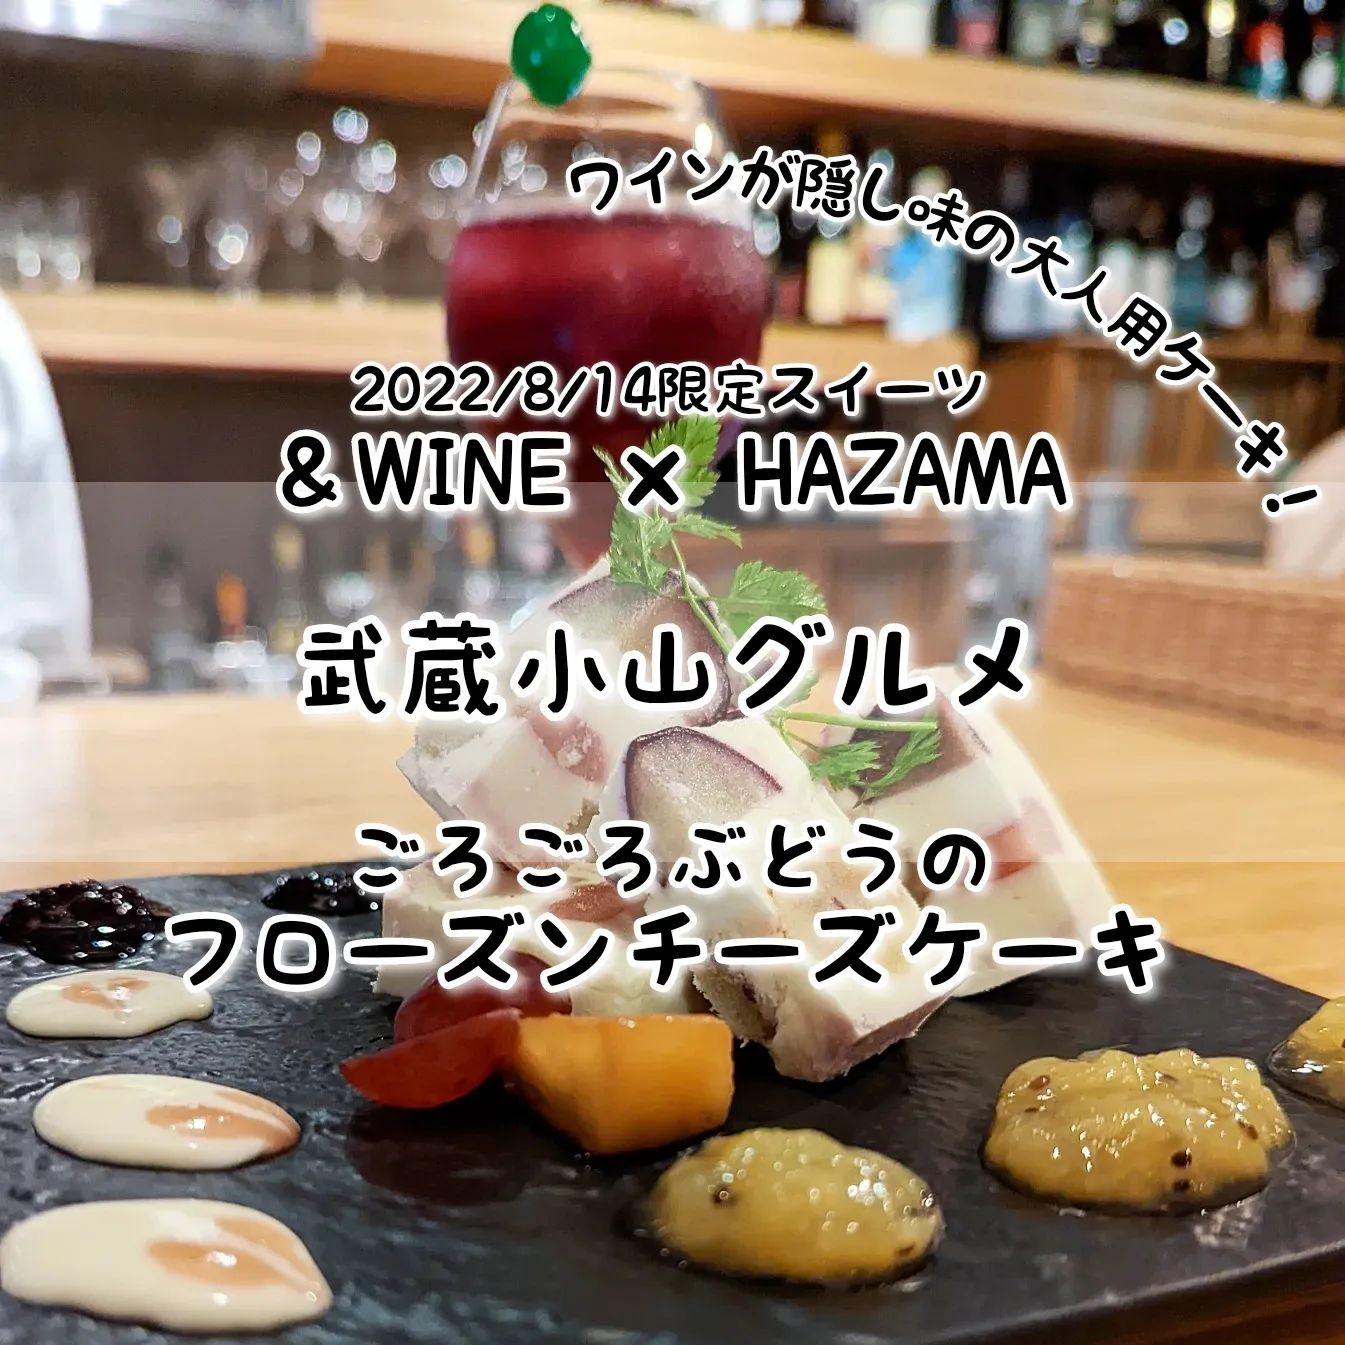 #武蔵小山グルメ情報 #hazama #ごろごろぶどうのフローズンチーズケーキ おもいで度－－－☆－ #侍猫度マイルド系－－☆－－スパイシー系あっさり系－－☆－－コッテリ系シンプル系－－－☆－ゴロゴロ系オールド系－－－☆－ニュー系たっぷりブドウにスッキリ冷たいチーズケーキが美味しい！チーズケーキには、沢山のぶどうの他にワインも少し隠し味に入れつつ、ひんやりですっきりなスイーツに仕上げてきております！一緒にいただいたサングリアは、たっぷりフルーツでアルコール感や渋さを無くしつつも、赤ワインのコクをしっかり感じるお酒が苦手でも美味しくいただけるスイーツなワインでございました！どちらも、お酒が苦手だけどお酒の風味を感じるラミー的なスイーツが好きという難しい方にハマる美味しさでございましたね！HAZAMA@hazama_ur_spaceこちらのお店は、2022年2月から＆WINEの店舗でコラボ営業している大人のスイーツ屋でございます。いまのところ毎月1回くらいのペースで、ほんのりお酒がきいたフルーツたっぷりのスイーツを味わうことができる激レア店です。店内には、優しいお姉さんがいて美味しさの秘密を聞きつつスイーツをいただけますので、初めての方も女性も安心して入れるお店でございます。次回9月の開催日は、まだ未定のようなので、お酒のスイーツ好きはインスタの告知を要チェックでございますね。場所は、武蔵小山駅から26号線を目黒郵便局方面へ進んで100円ローソン手前にございますミチノサキビルの6階でございます。ルリューユニークってパン屋さんの入っているビルでございますね。 【侍猫の育て方】メインサイトも見ていただくと、侍猫が元気になって武蔵小山をもっと食べ歩きます！※メインサイトへの移動はプロフィールのURLが簡単！→ @musashikoyama.news → https://musashikoyama.samuraicat.jp/記事の他、広告の詳細まで見ていただいたムサコマニアの皆様ありがとうございます！【侍猫のご飯のあげ方】武蔵小山駅周辺のグルメ情報をお気軽にご連絡ください。気まぐれにUPします！ #武蔵小山 #武蔵小山情報 #武蔵小山ランチ #武蔵小山商店街 #武蔵小山駅 #武蔵小山グルメ #武蔵小山カフェ #西小山 #戸越銀座 #不動前 #碑文谷 #戸越 #目黒本町 #品川 #品川グルメ #目黒 #目黒グルメ #東京 #東京グルメ #東京ランチ #musashikoyama #tokyofood #tokyofoodie #tokyo #チーズケーキ